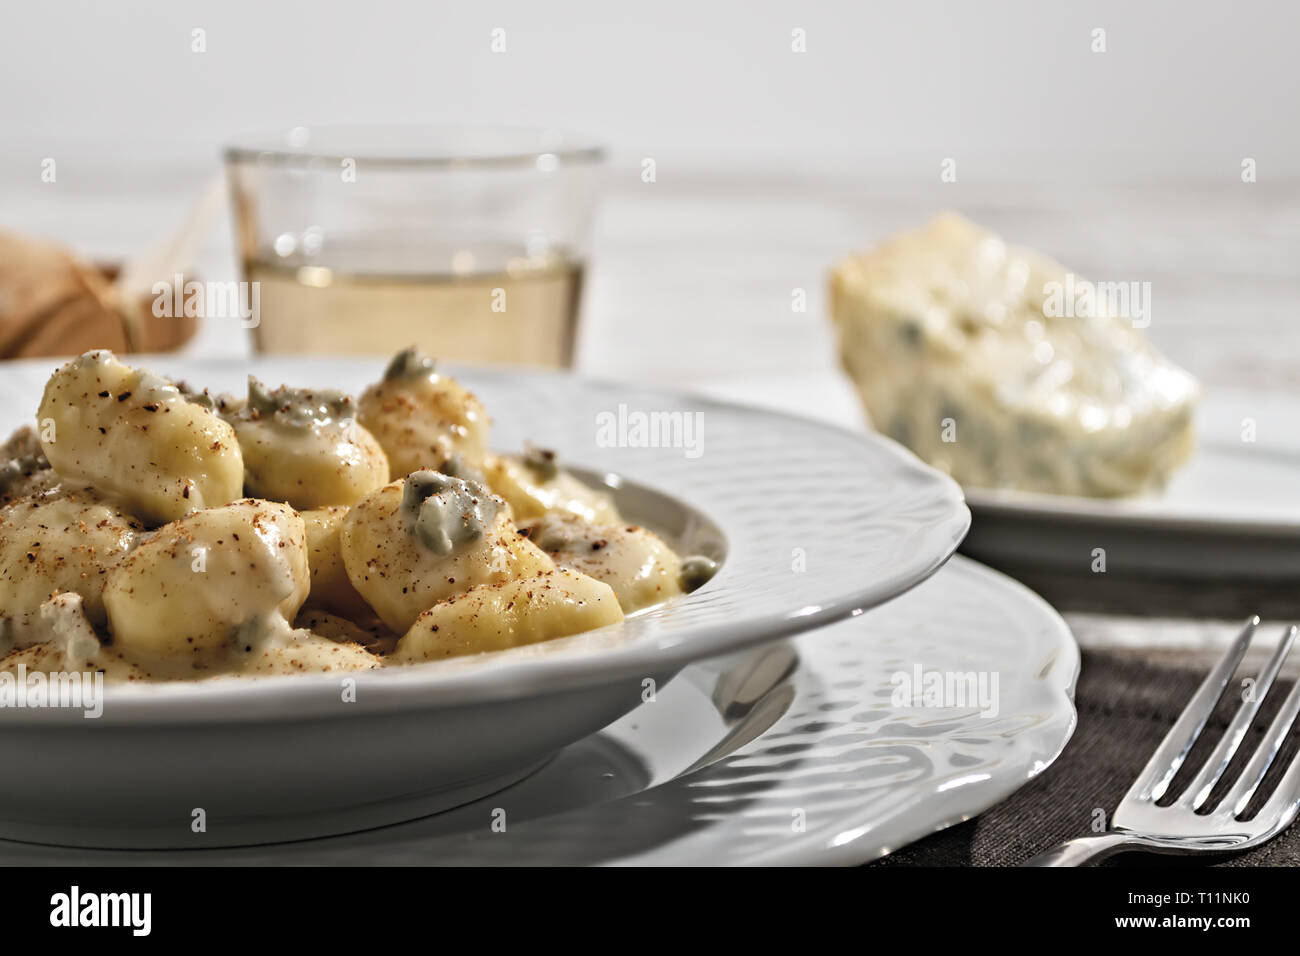 Gnocchi di Patate al formaggio Gorgonzola e Noce moscata con Piatto di Gorgonzola dal Basso primo piano Stockfoto